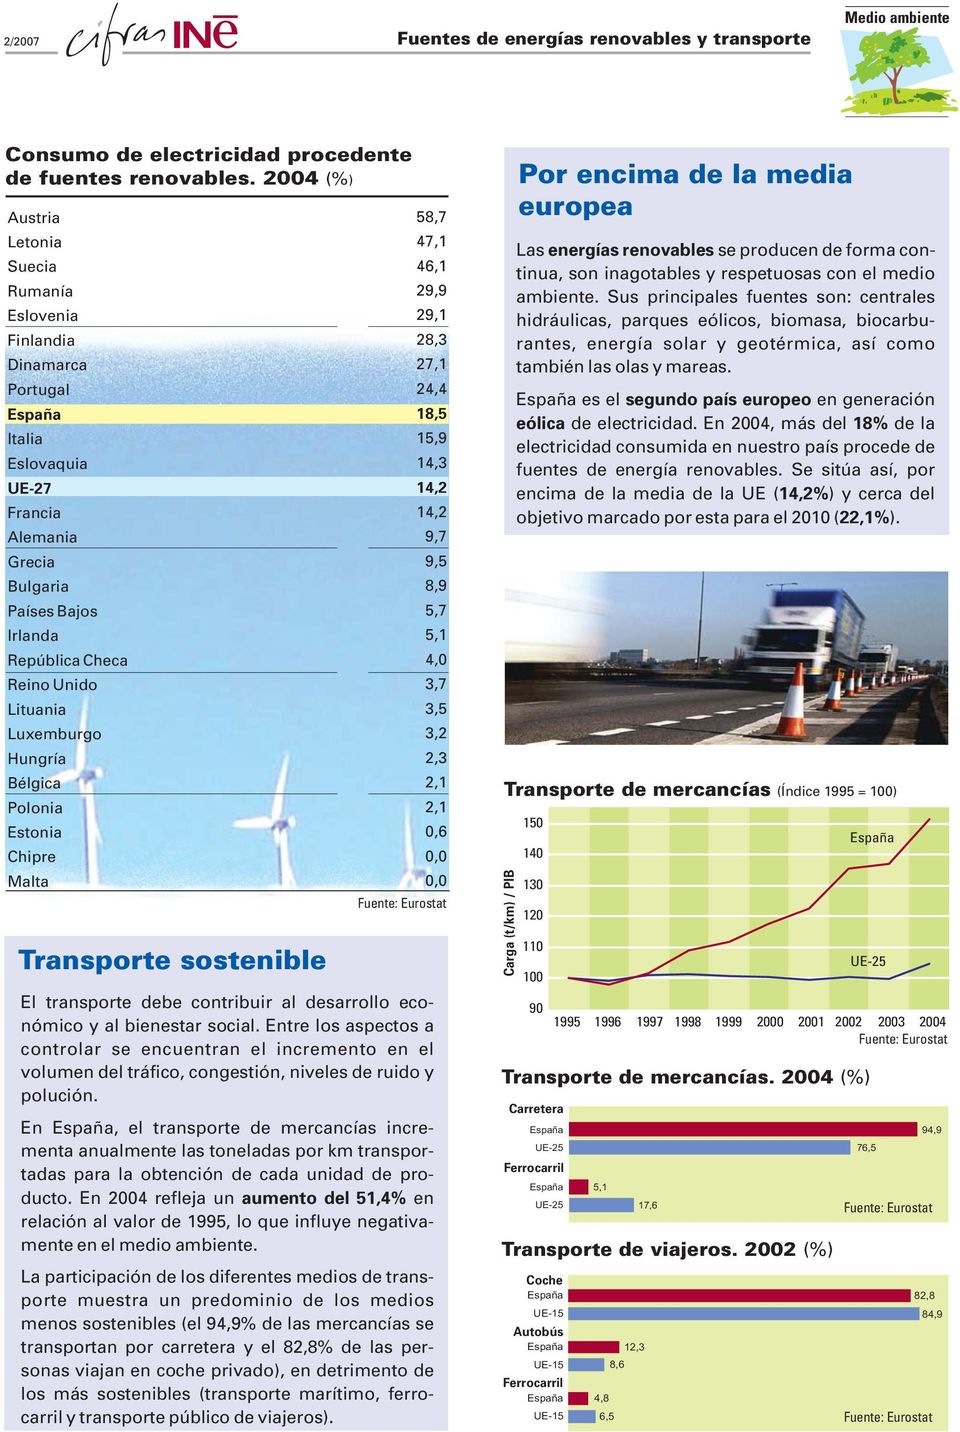 Luxemburgo Hungría Bélgica Polonia Estonia Chipre Malta Transporte sostenible 58,7 47,1 46,1 29,9 29,1 28, 27,1 24,4 18,5 15,9 14, 14,2 14,2 9,7 9,5 8,9 5,7 5,1 4,0,7,5,2 2, 2,1 2,1 0,6 0,0 0,0 El